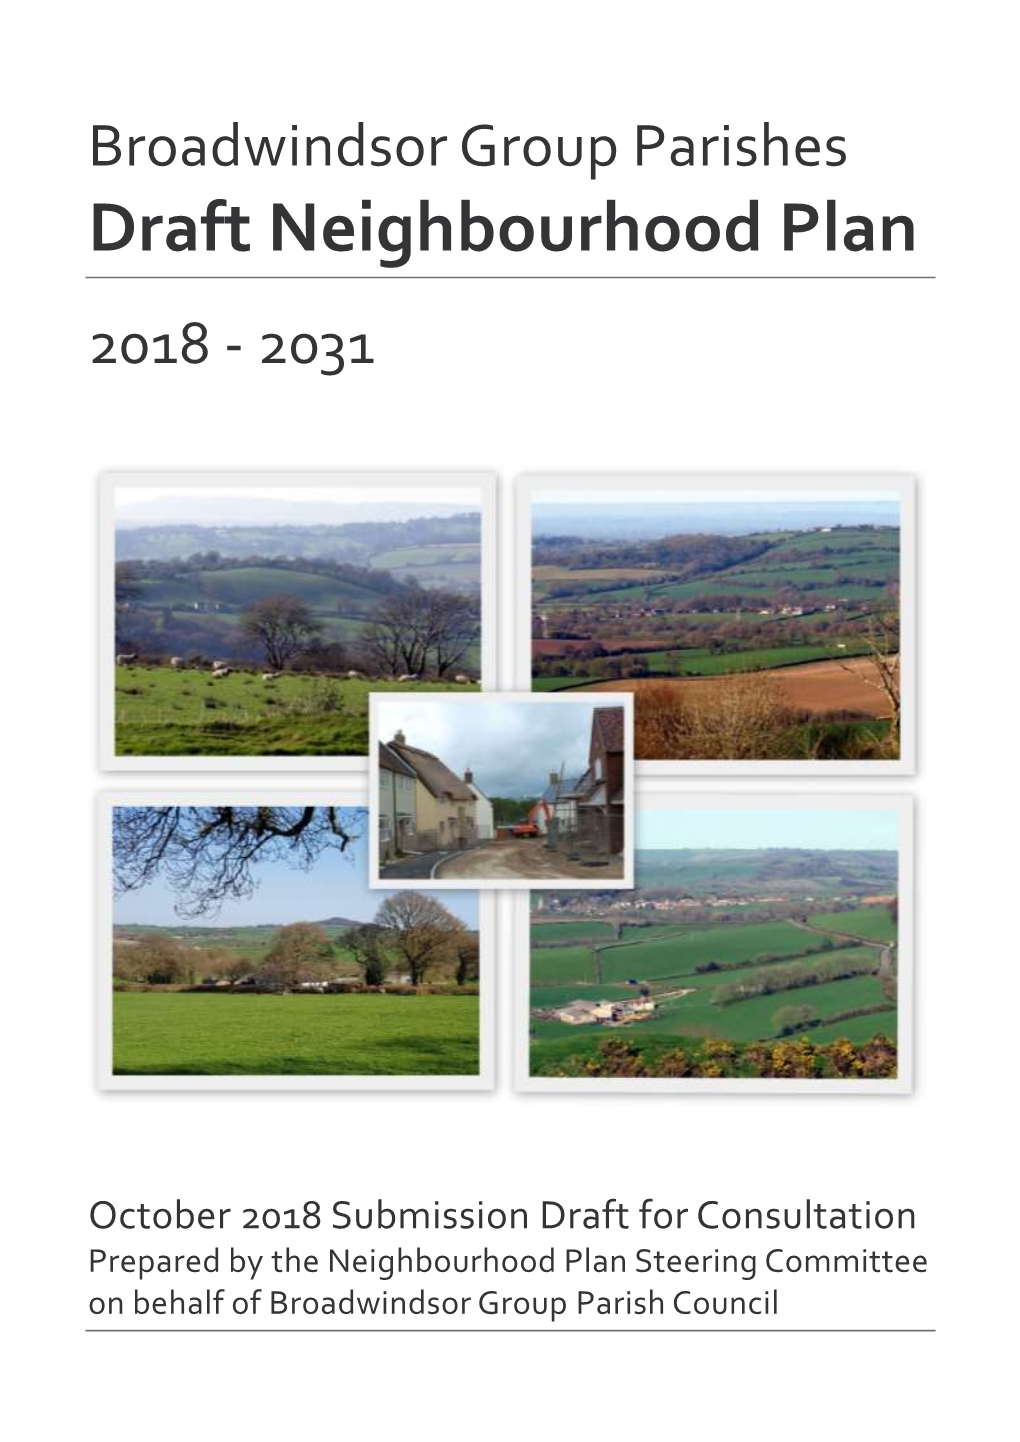 Draft Neighbourhood Plan 2018 - 2031